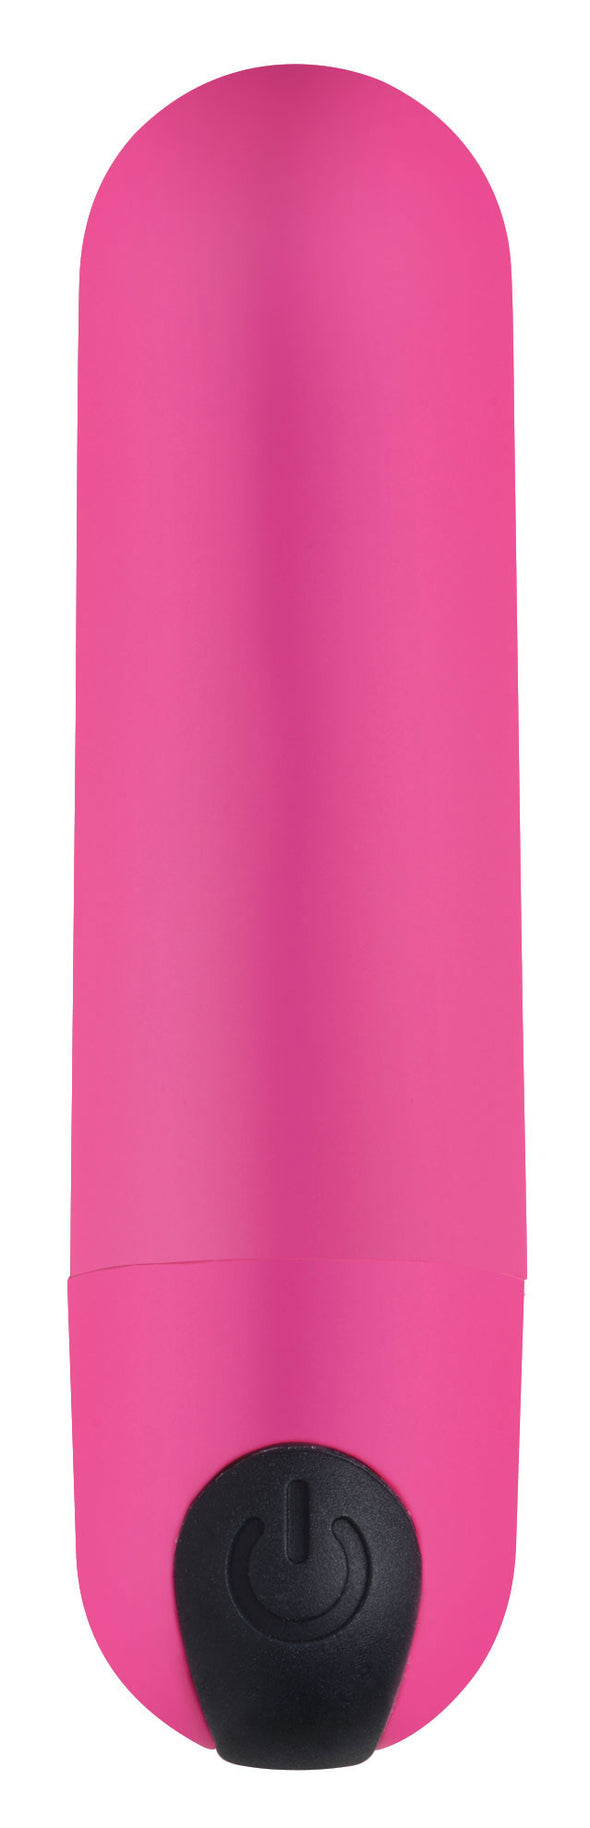 Bang Power Panty Kit - Pink-Kits-XR Brands Bang-Andy's Adult World